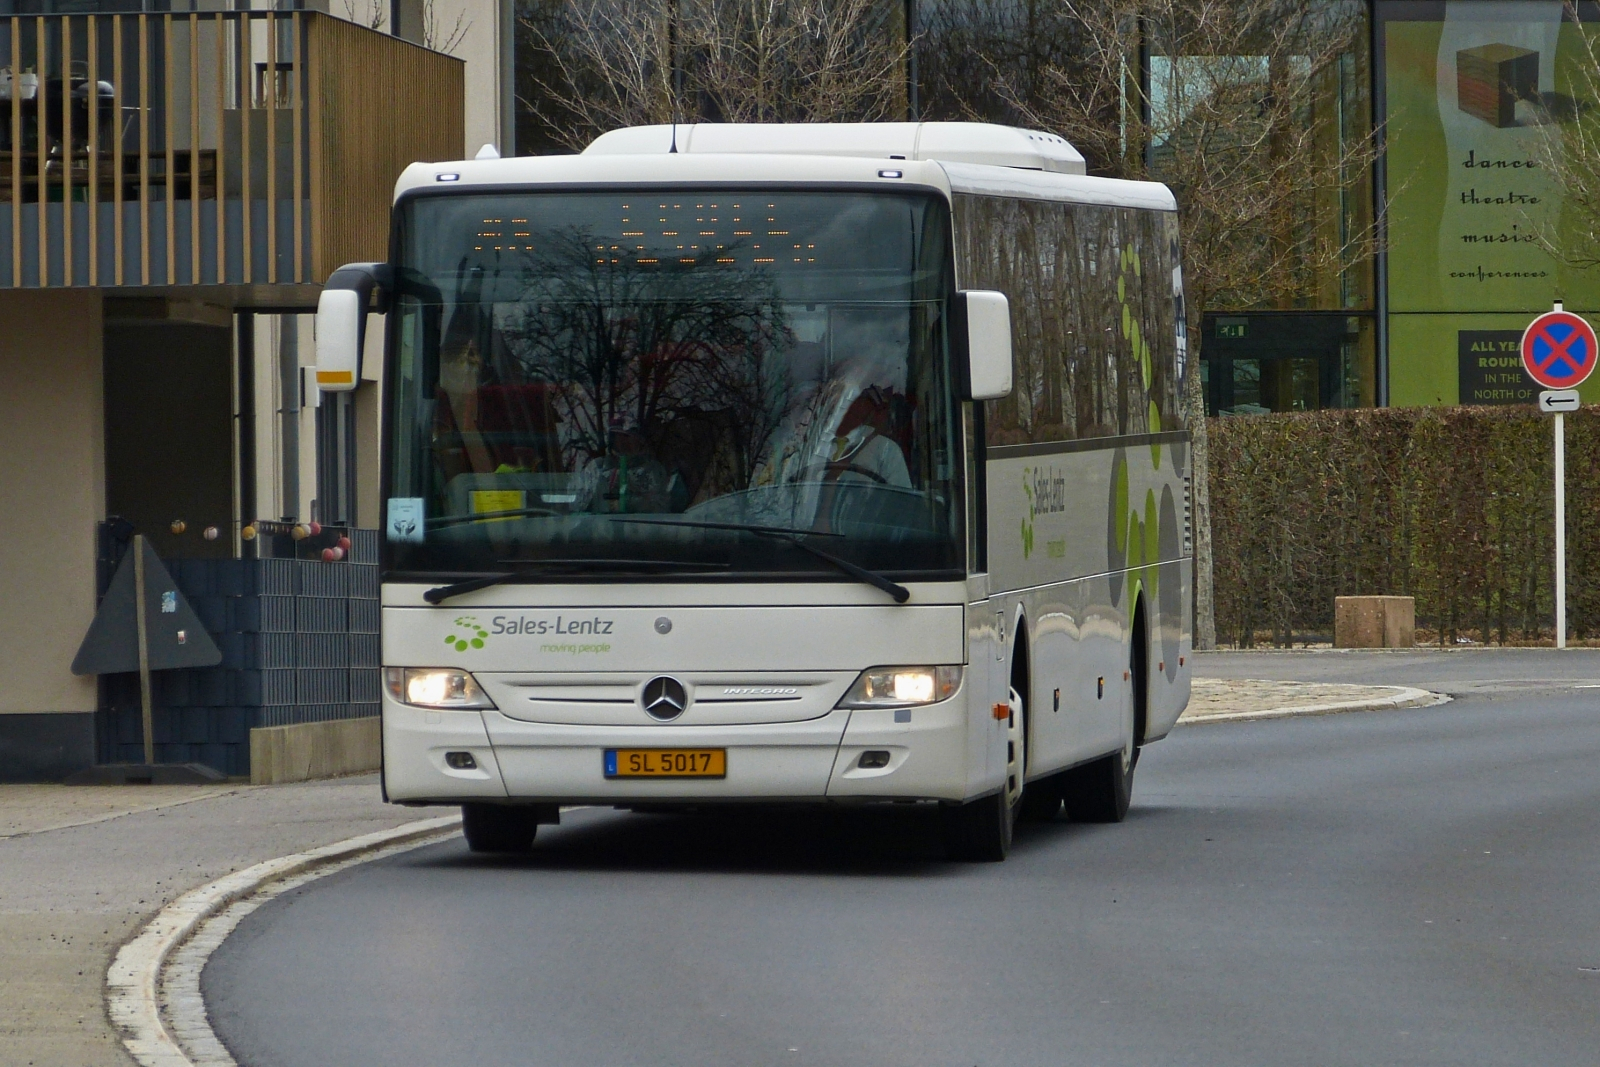 SL 5017 Mercedas Integro von Sales Lentz, in Marnach als Schulbus unterwegs. 04.2023